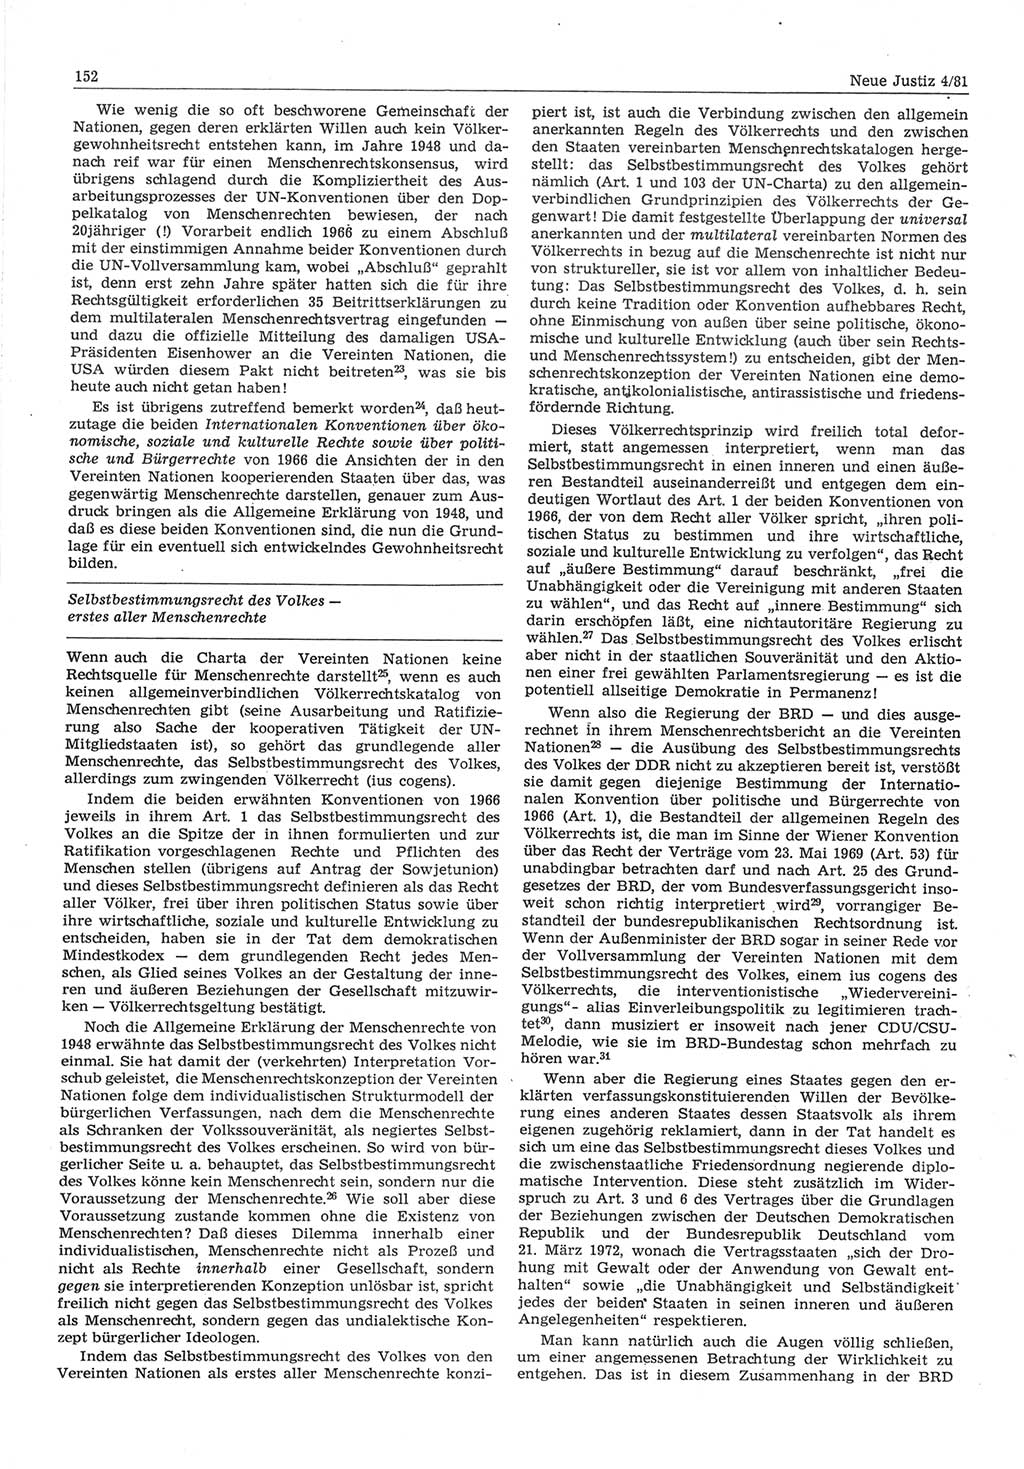 Neue Justiz (NJ), Zeitschrift für sozialistisches Recht und Gesetzlichkeit [Deutsche Demokratische Republik (DDR)], 35. Jahrgang 1981, Seite 152 (NJ DDR 1981, S. 152)